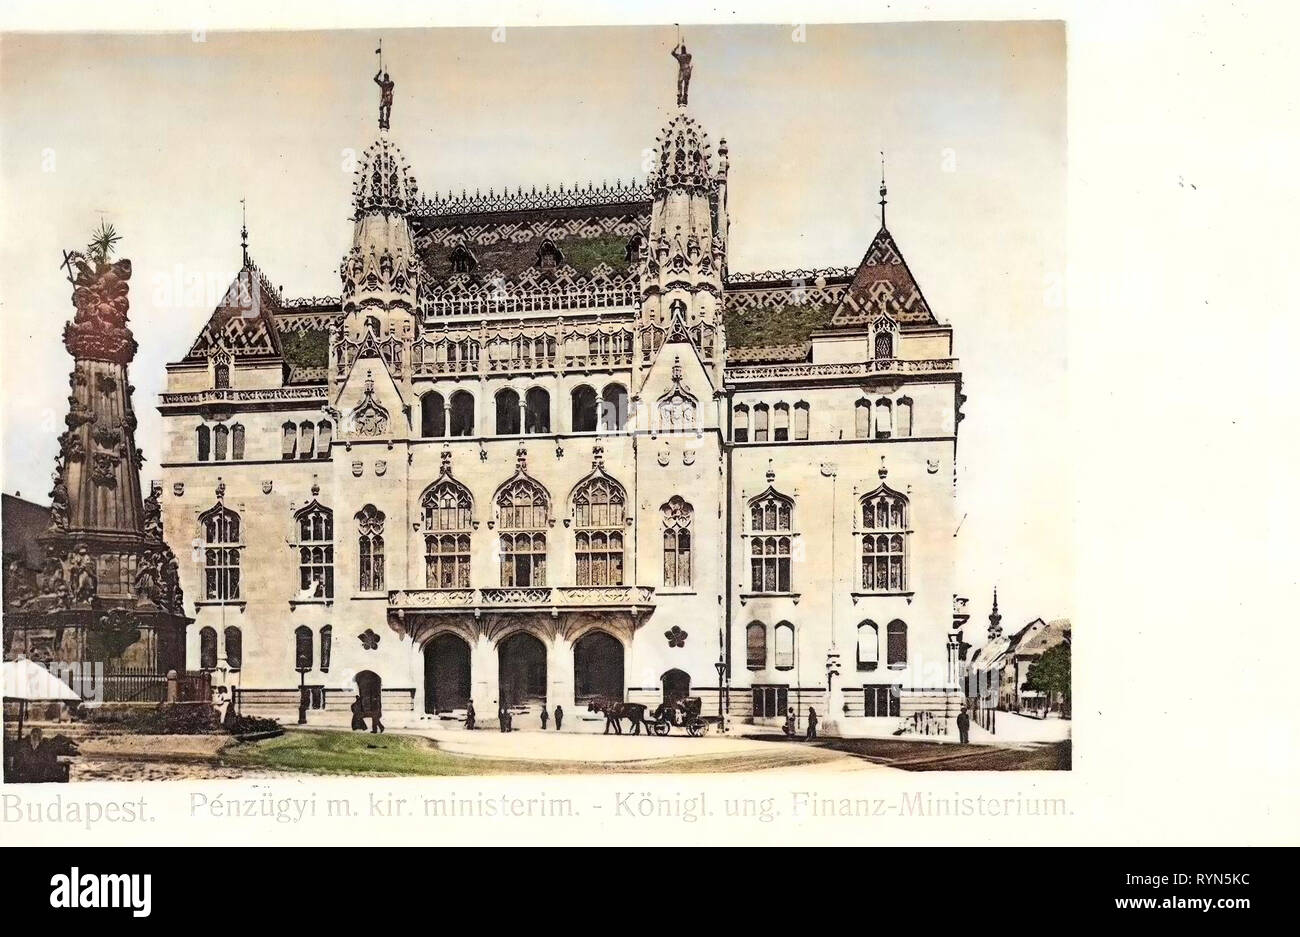 Gebäude der Ungarischen Kultur Stiftung und der Dreifaltigkeitssäule, 1904, Budapest, Königlich ungarisches Finanzministerium, Ungarn Stockfoto